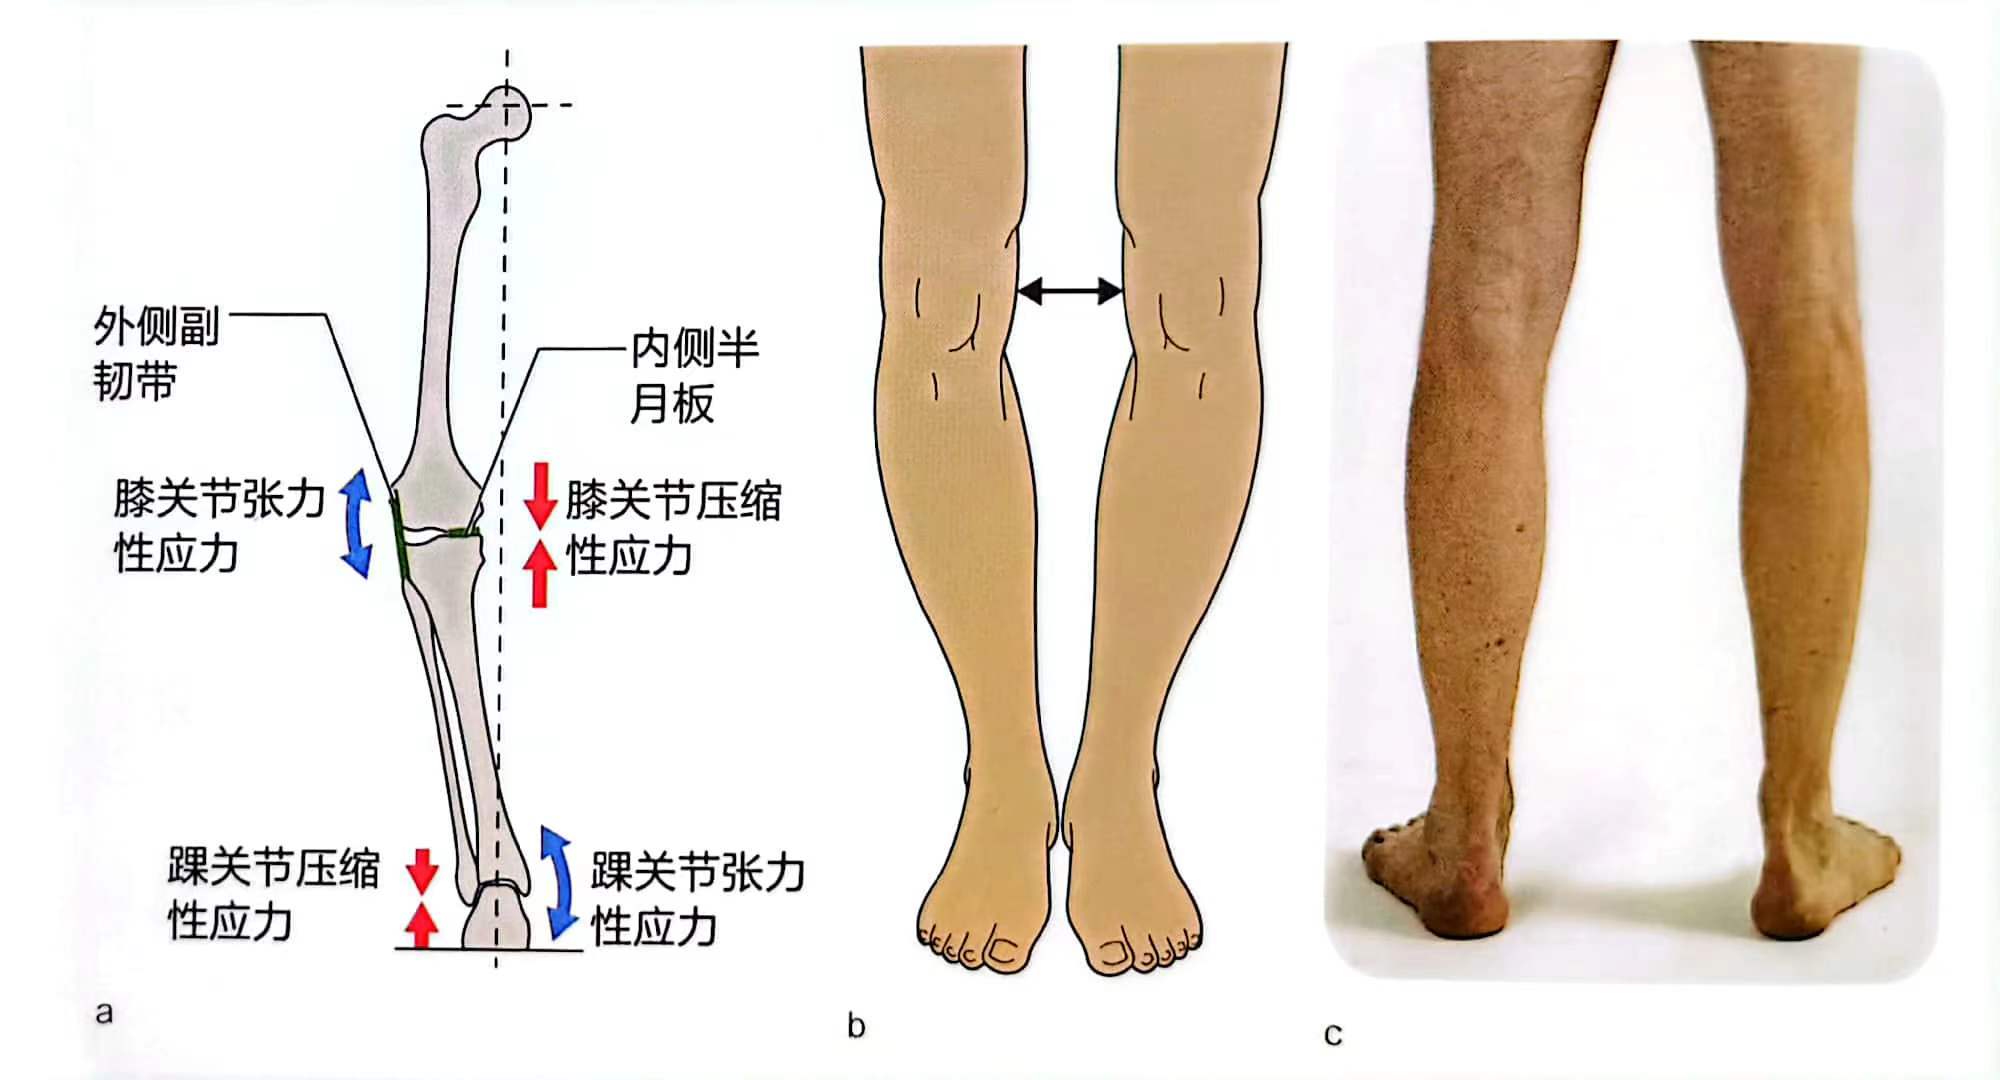 膝外翻,一般也称为x型腿.